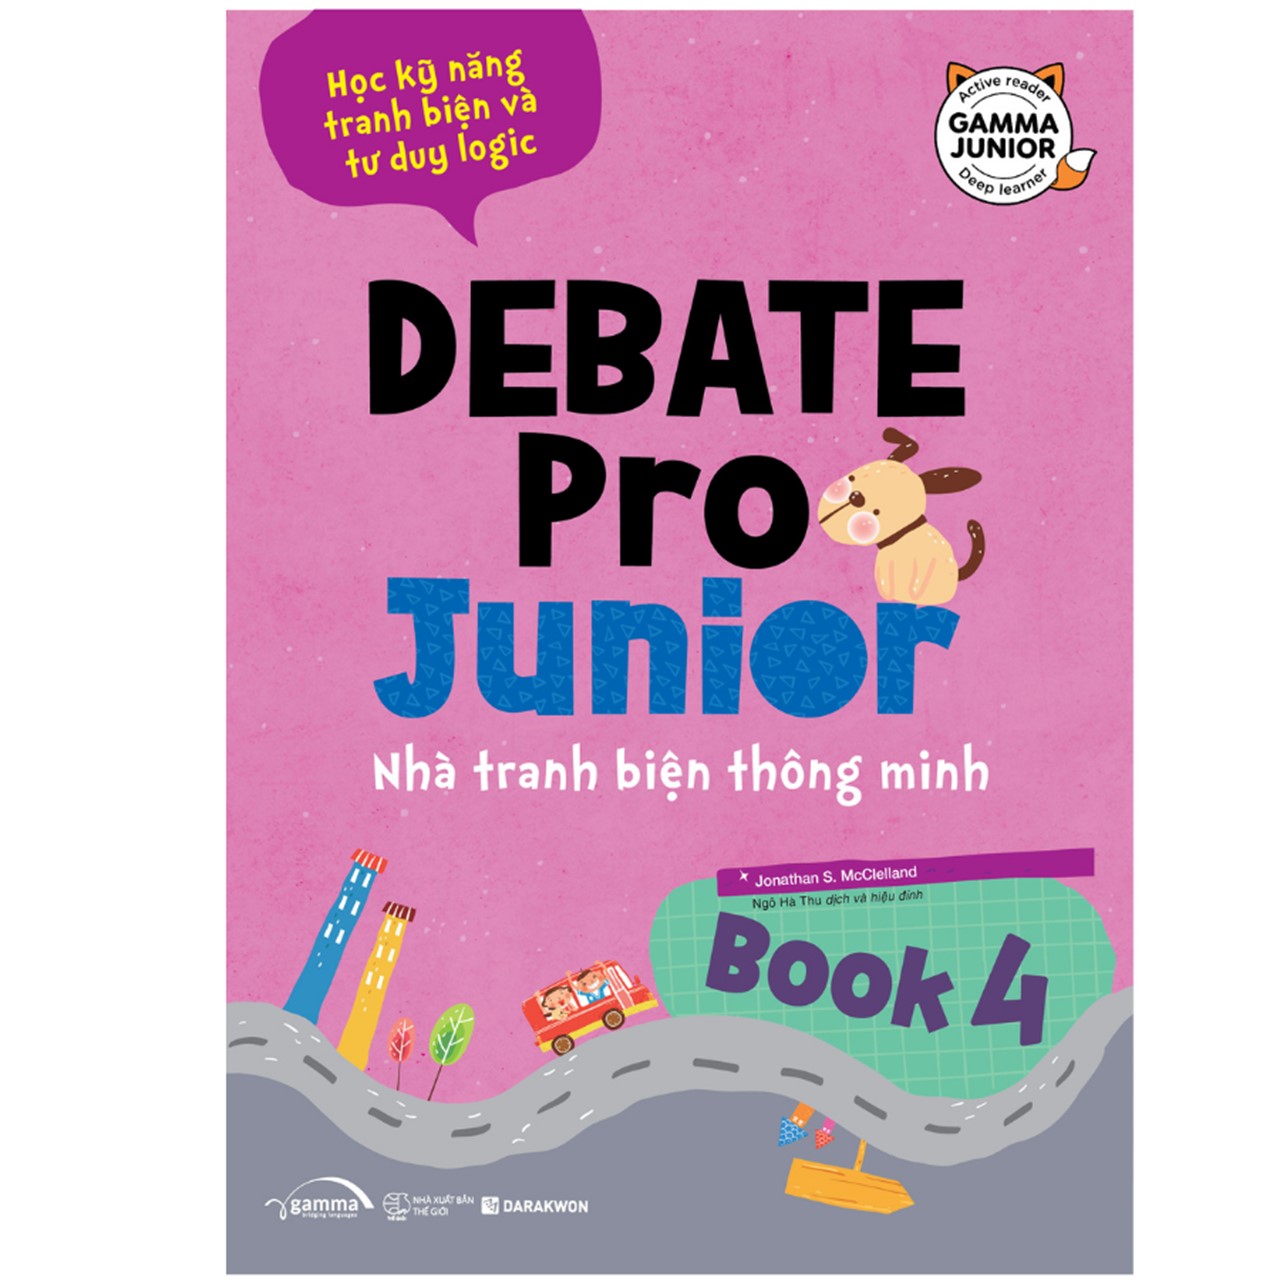 Combo Debate Pro Junior 3 + 4 - Nhà Tranh Biện Thông Minh